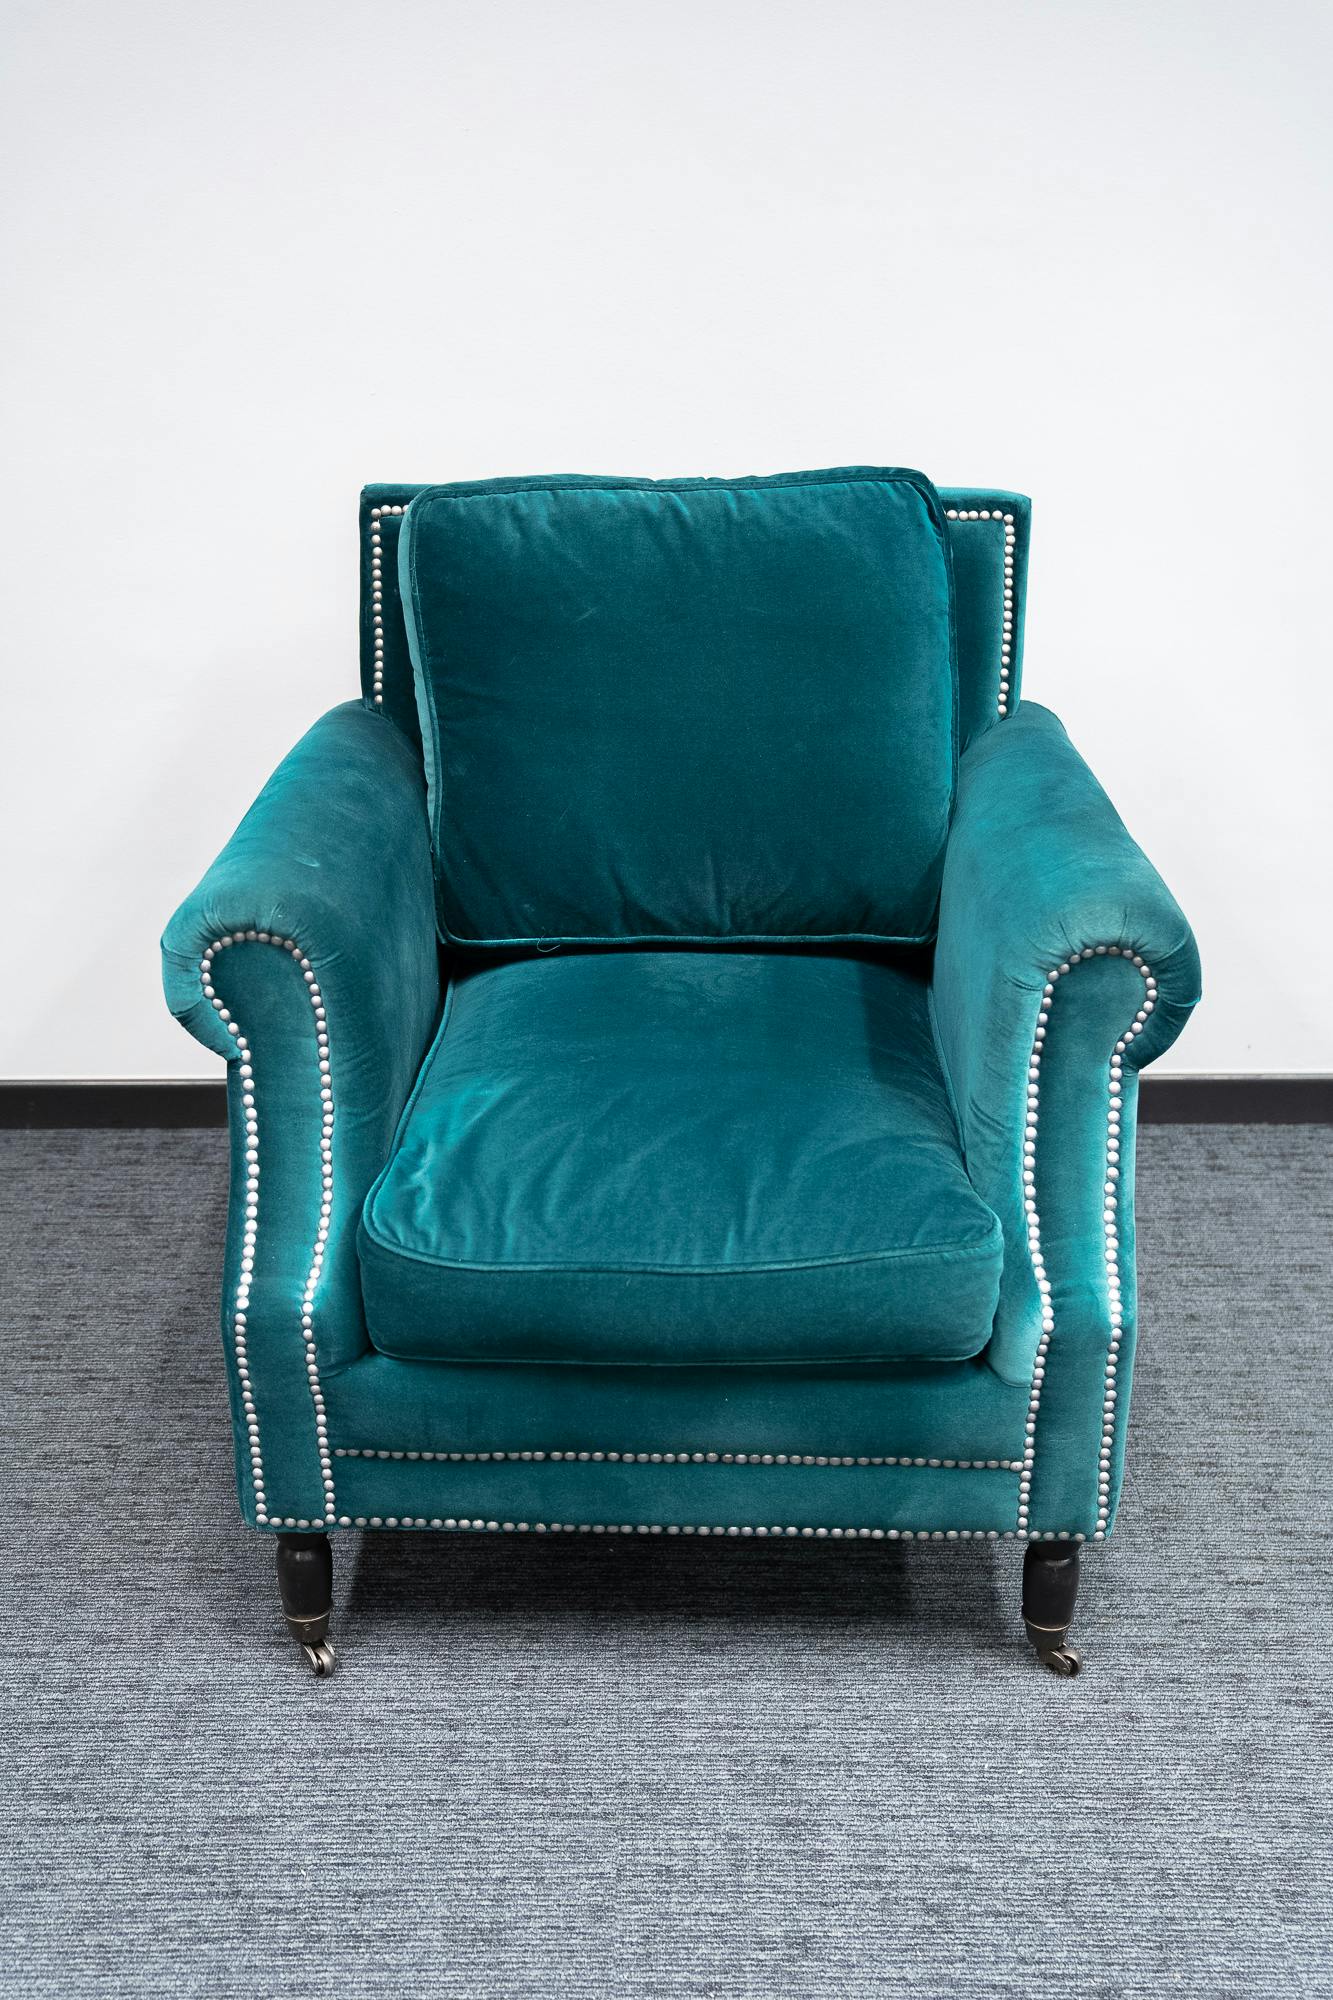 Armchair Satellite in green velvet - Tweedehands kwaliteit "Leunstoelen en luiers" - Relieve Furniture